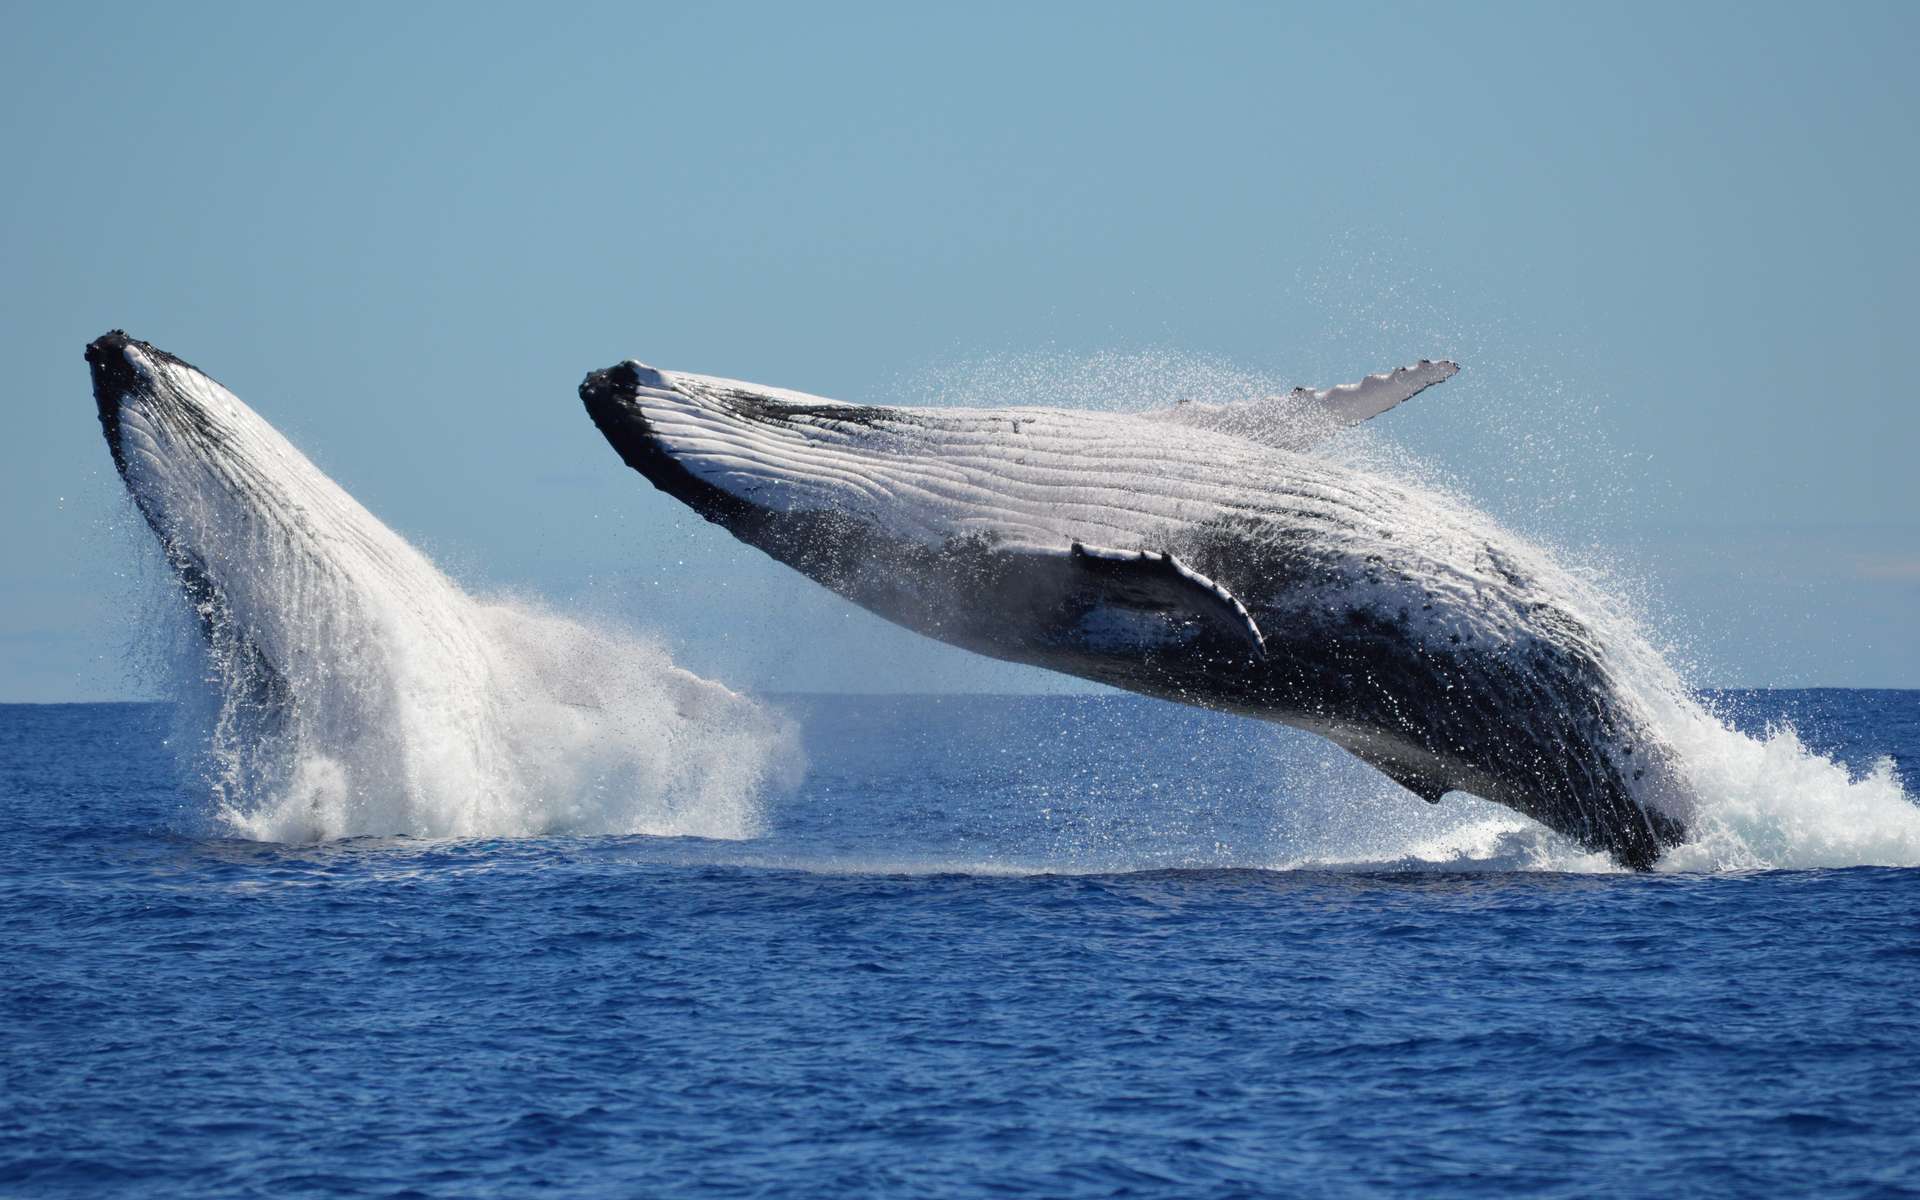 Premières images d'un accouplement de baleines à bosse : un mâle tente de s'accoupler avec un autre mâle blessé